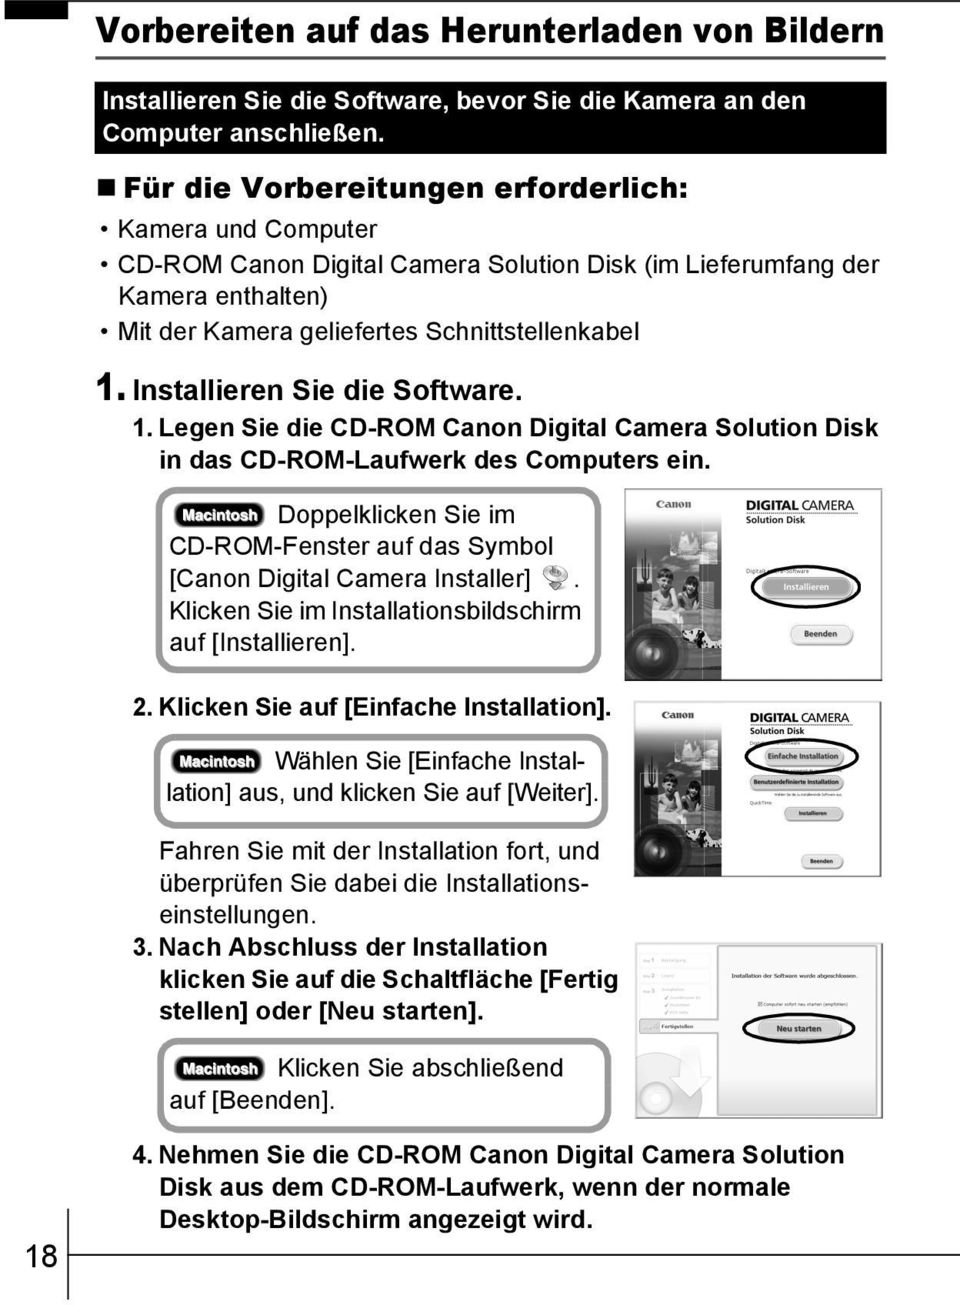 Installieren Sie die Software. 1. Legen Sie die CD-ROM Canon Digital Camera Solution Disk in das CD-ROM-Laufwerk des Computers ein.